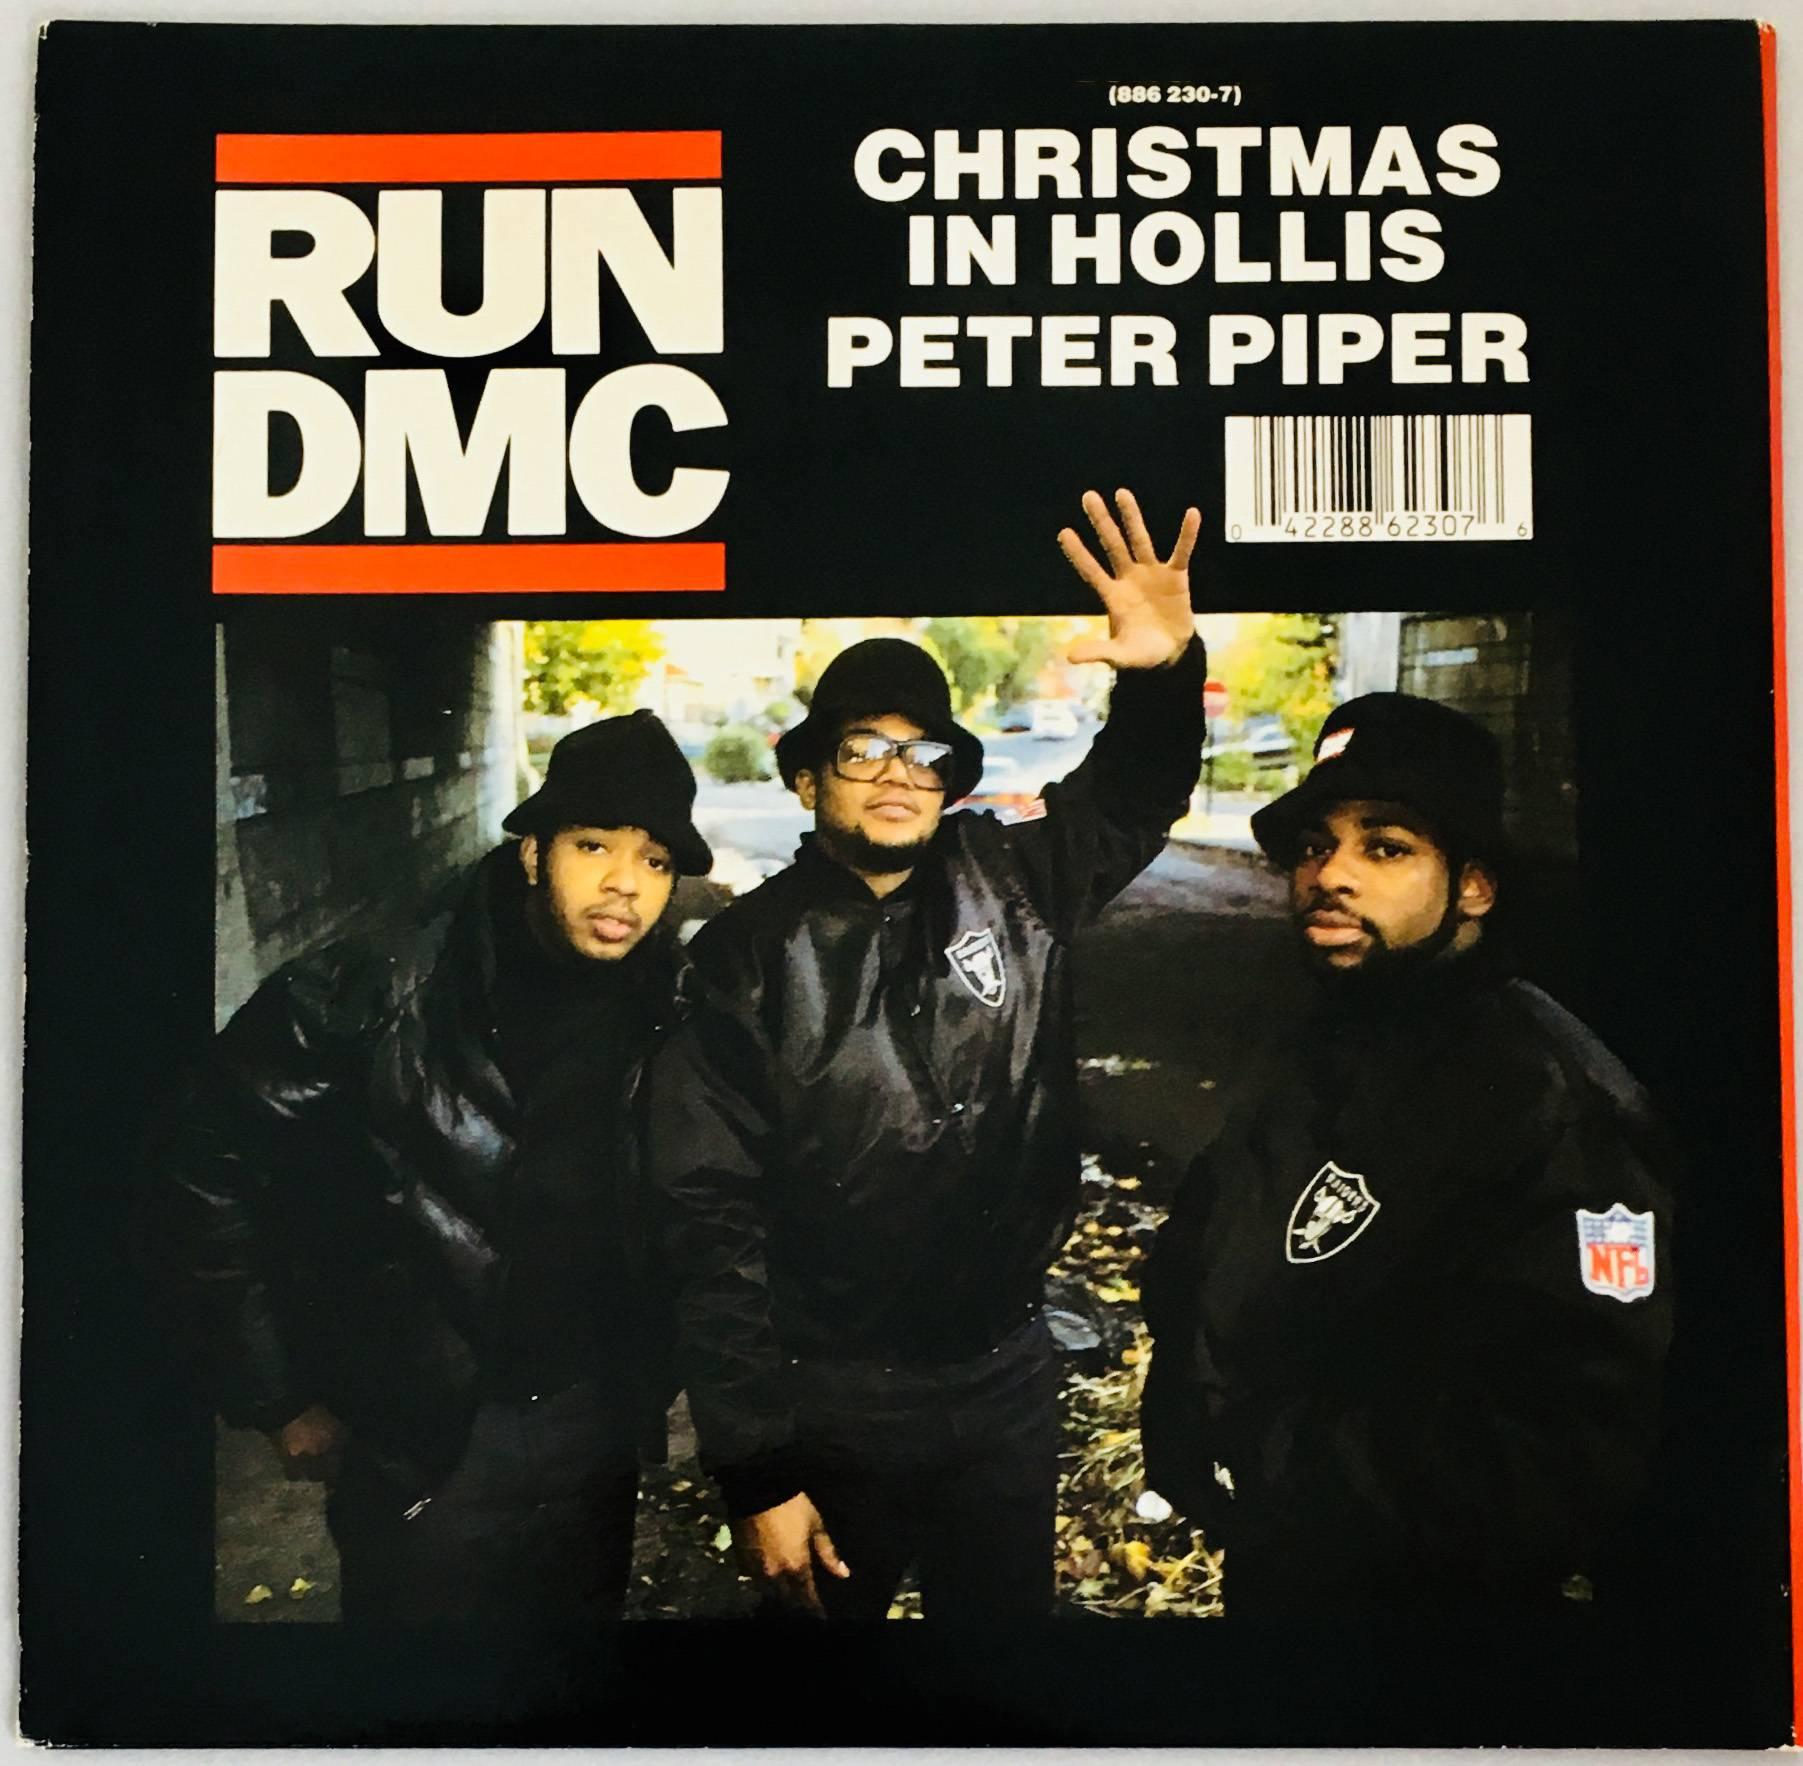 run dmc album covers